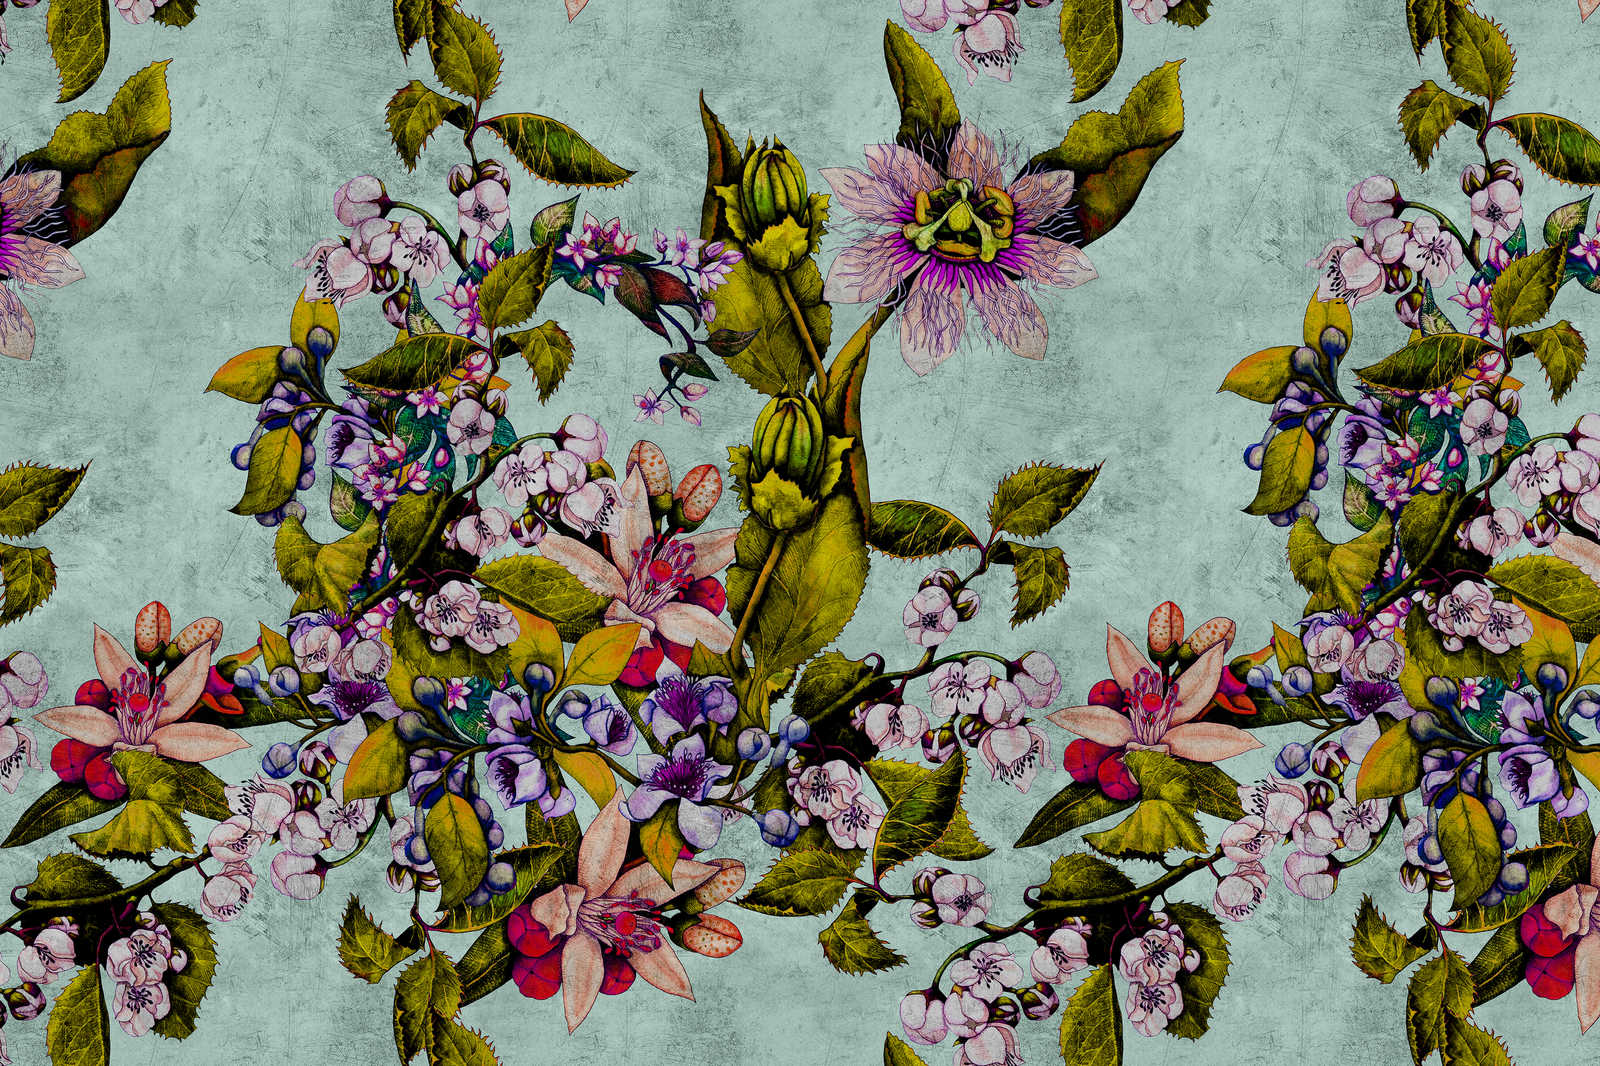             Pasión tropical 2 - Cuadro en lienzo con flores y capullos - 0,90 m x 0,60 m
        